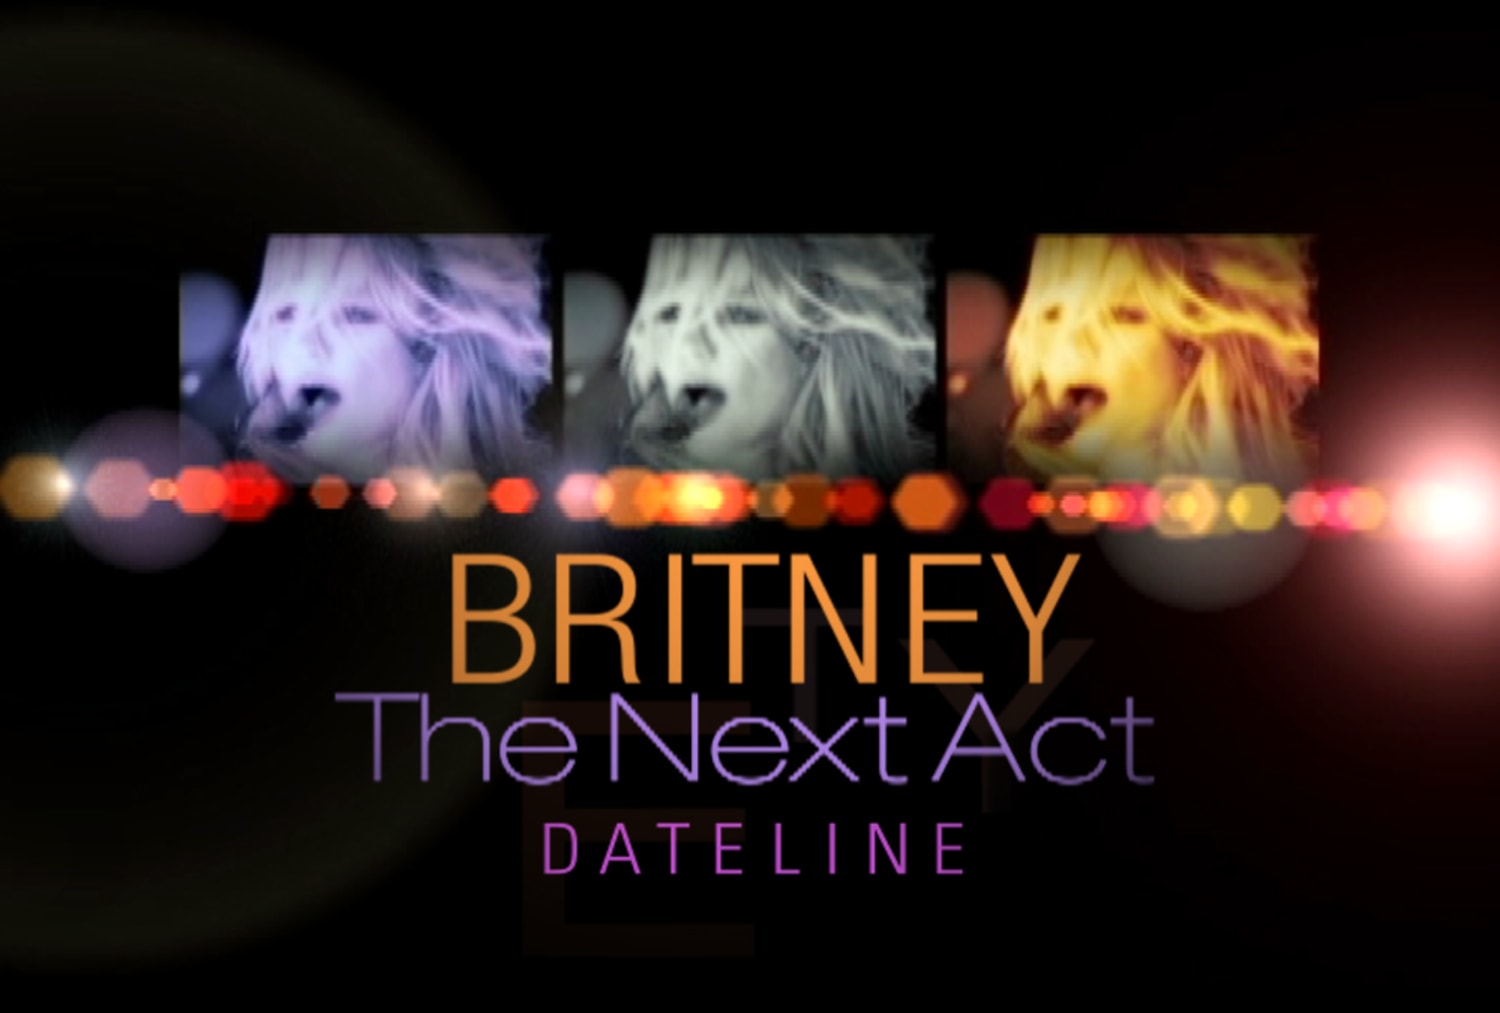 Britney's next act